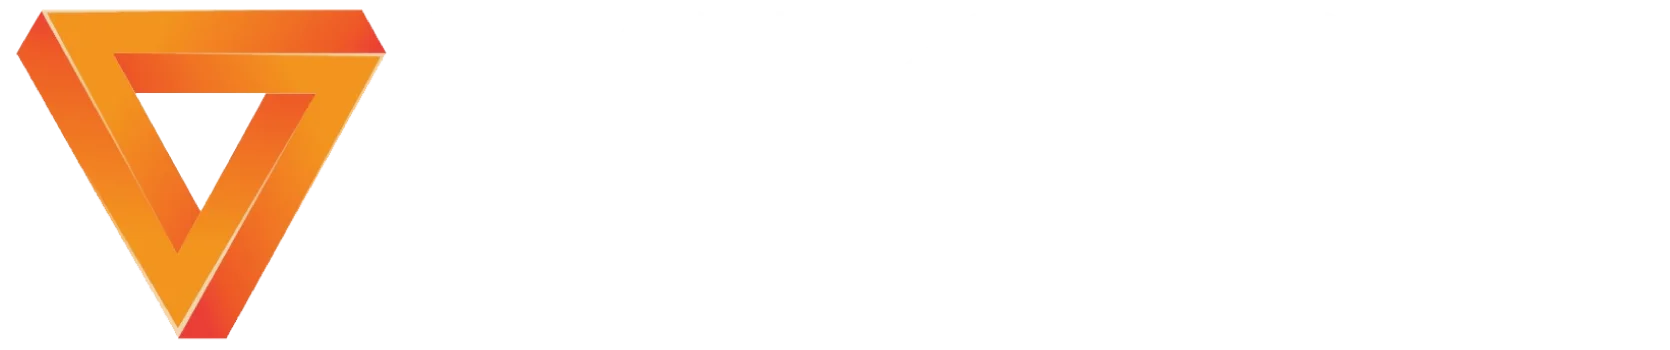 Viking Energia e TI Logomarca Branca